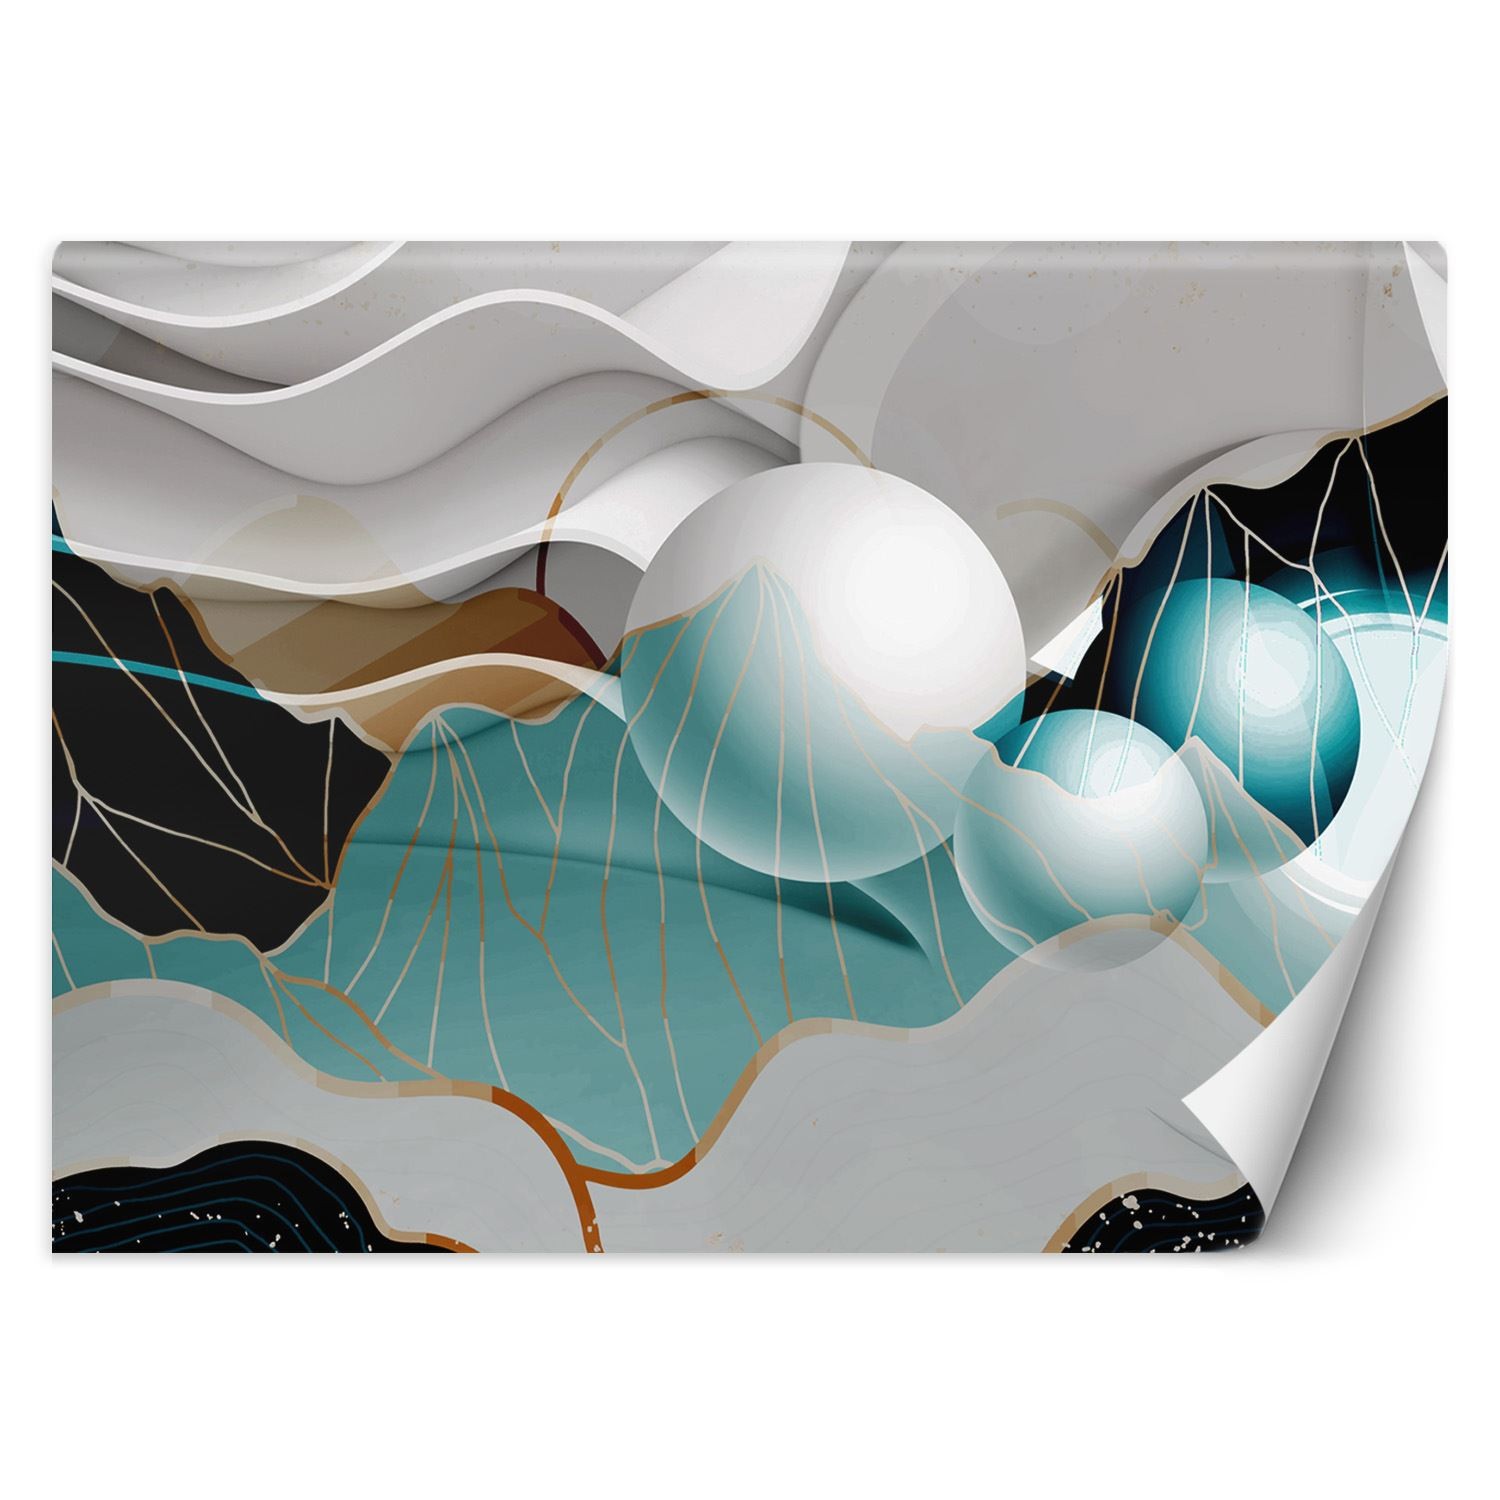 Trend24 – Behang – Abstract Met Ballen 3D – Vliesbehang – Behang Woonkamer – Fotobehang – 450x315x2 cm – Incl. behanglijm